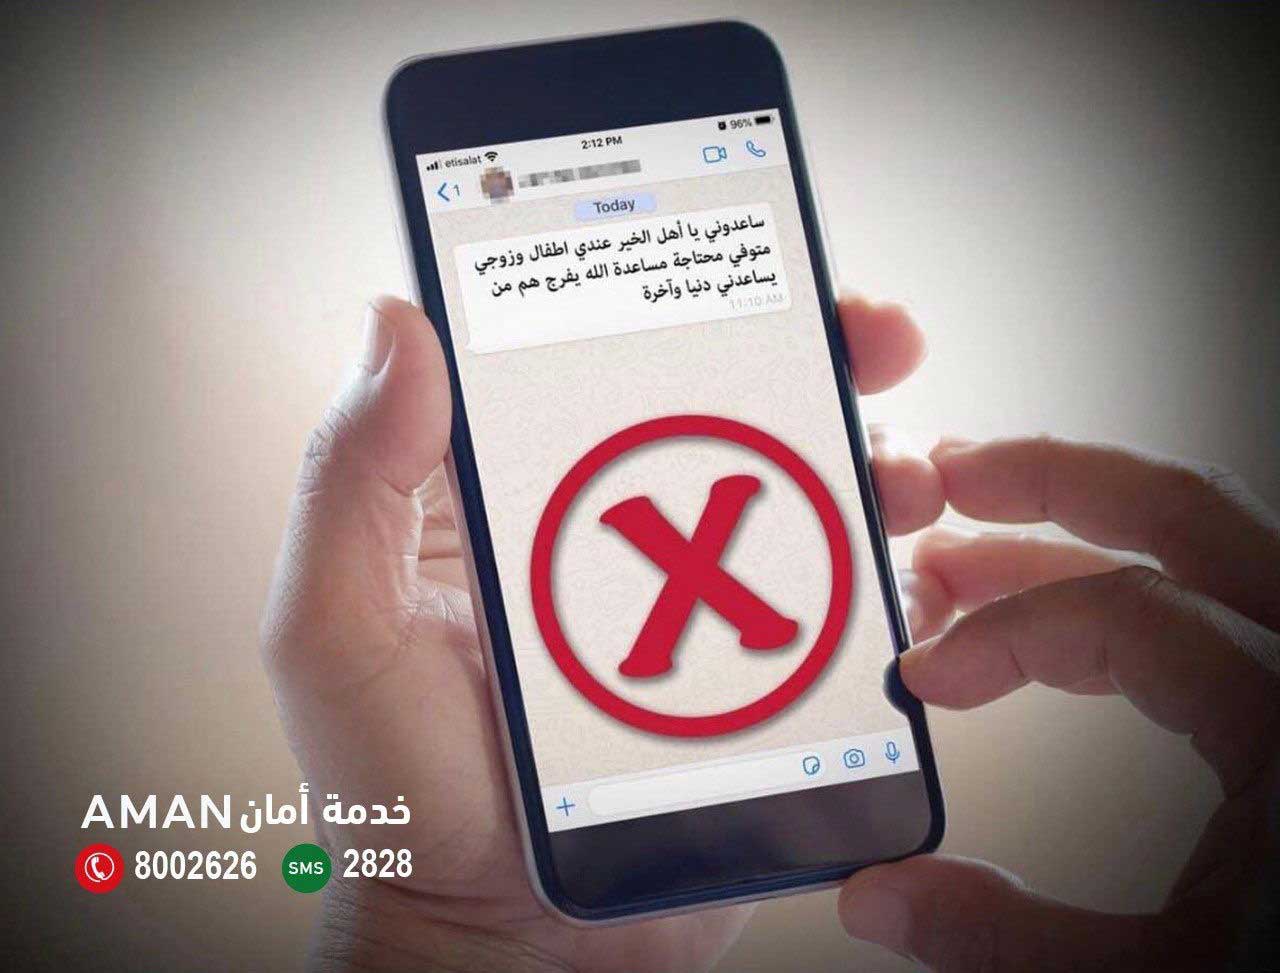    شرطة أبوظبي تحذر: الحبس 6 أشهر و100 ألف درهم غرامة التسول الالكتروني المنظم